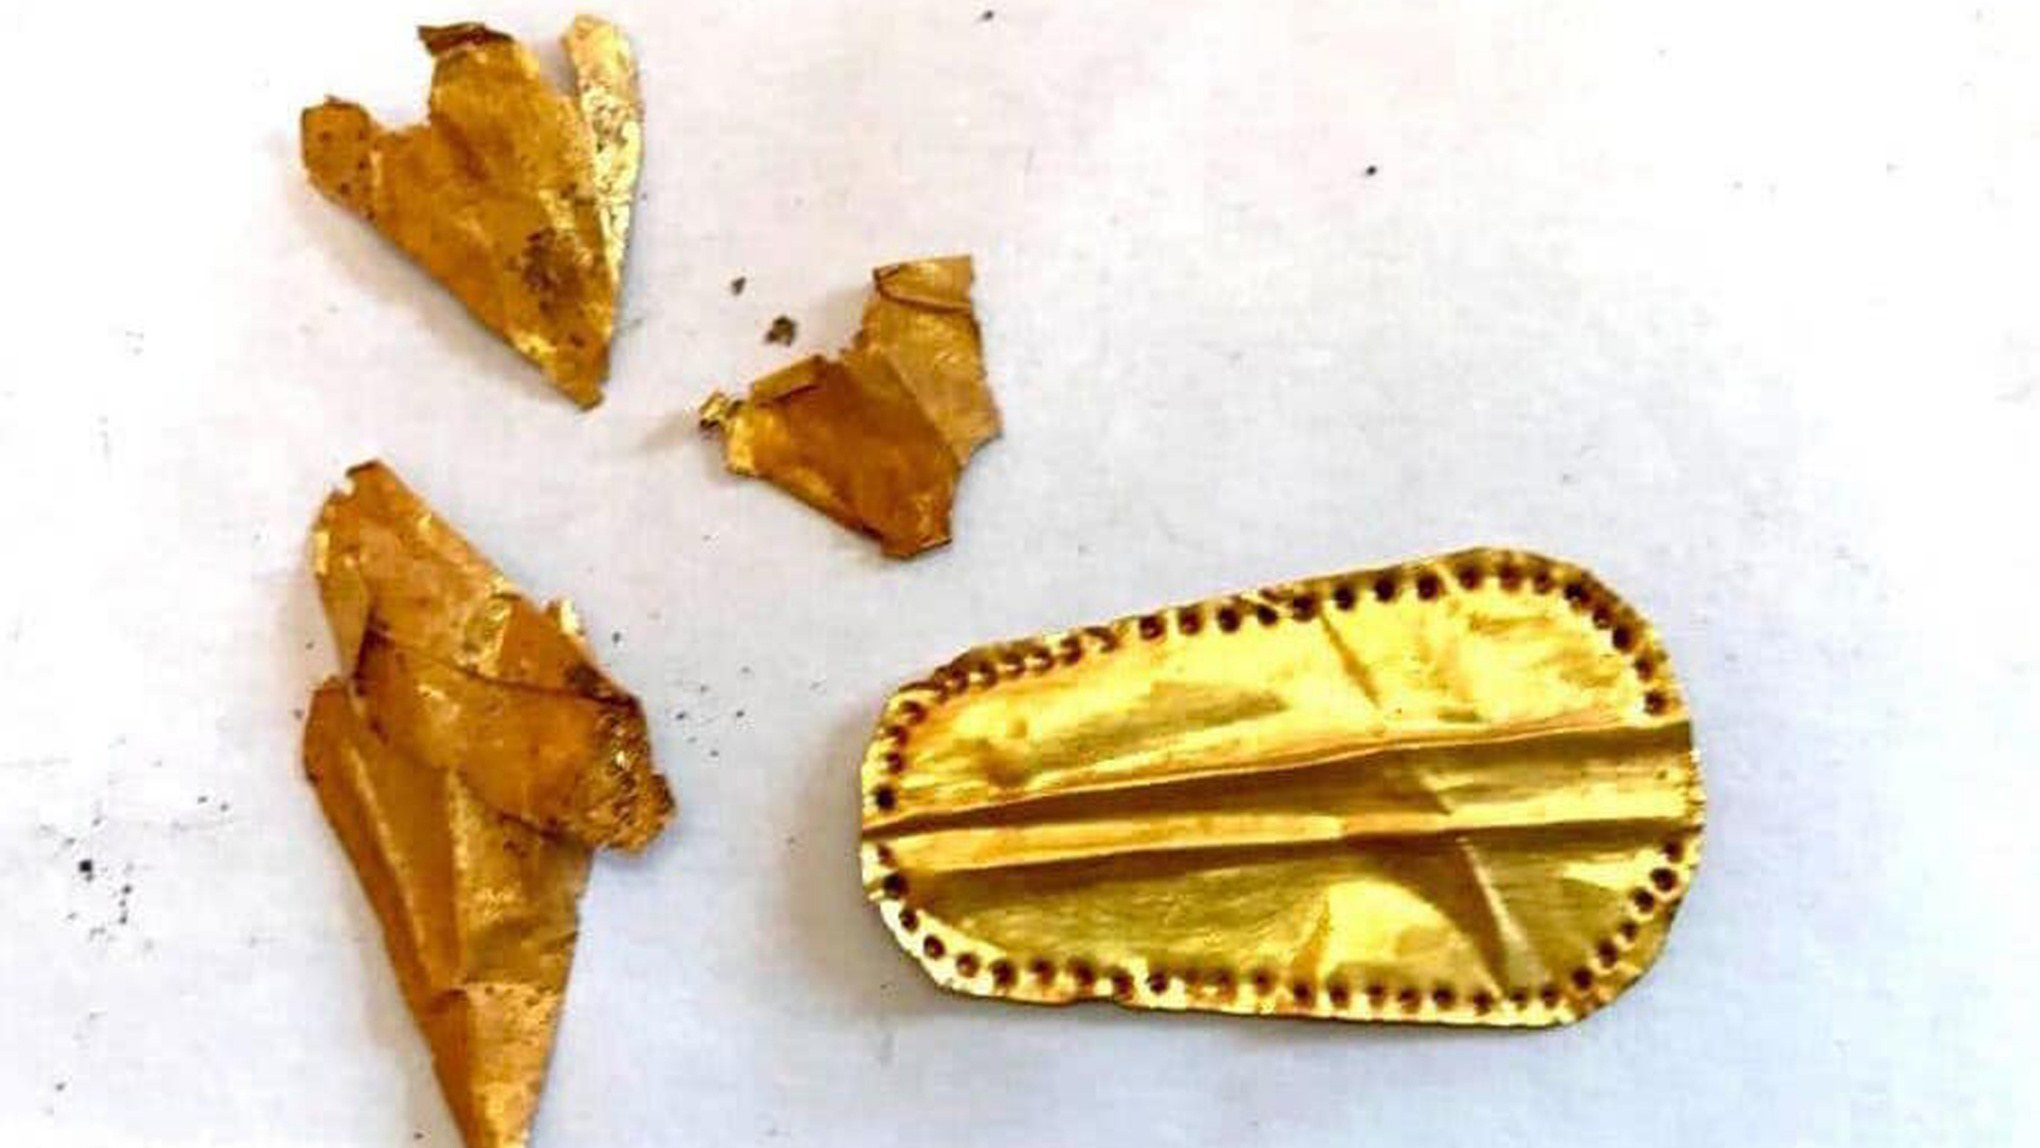 注釈付きの画像は、エジプトのケワイスナ墓地遺跡で発見された金の舌を示しています。